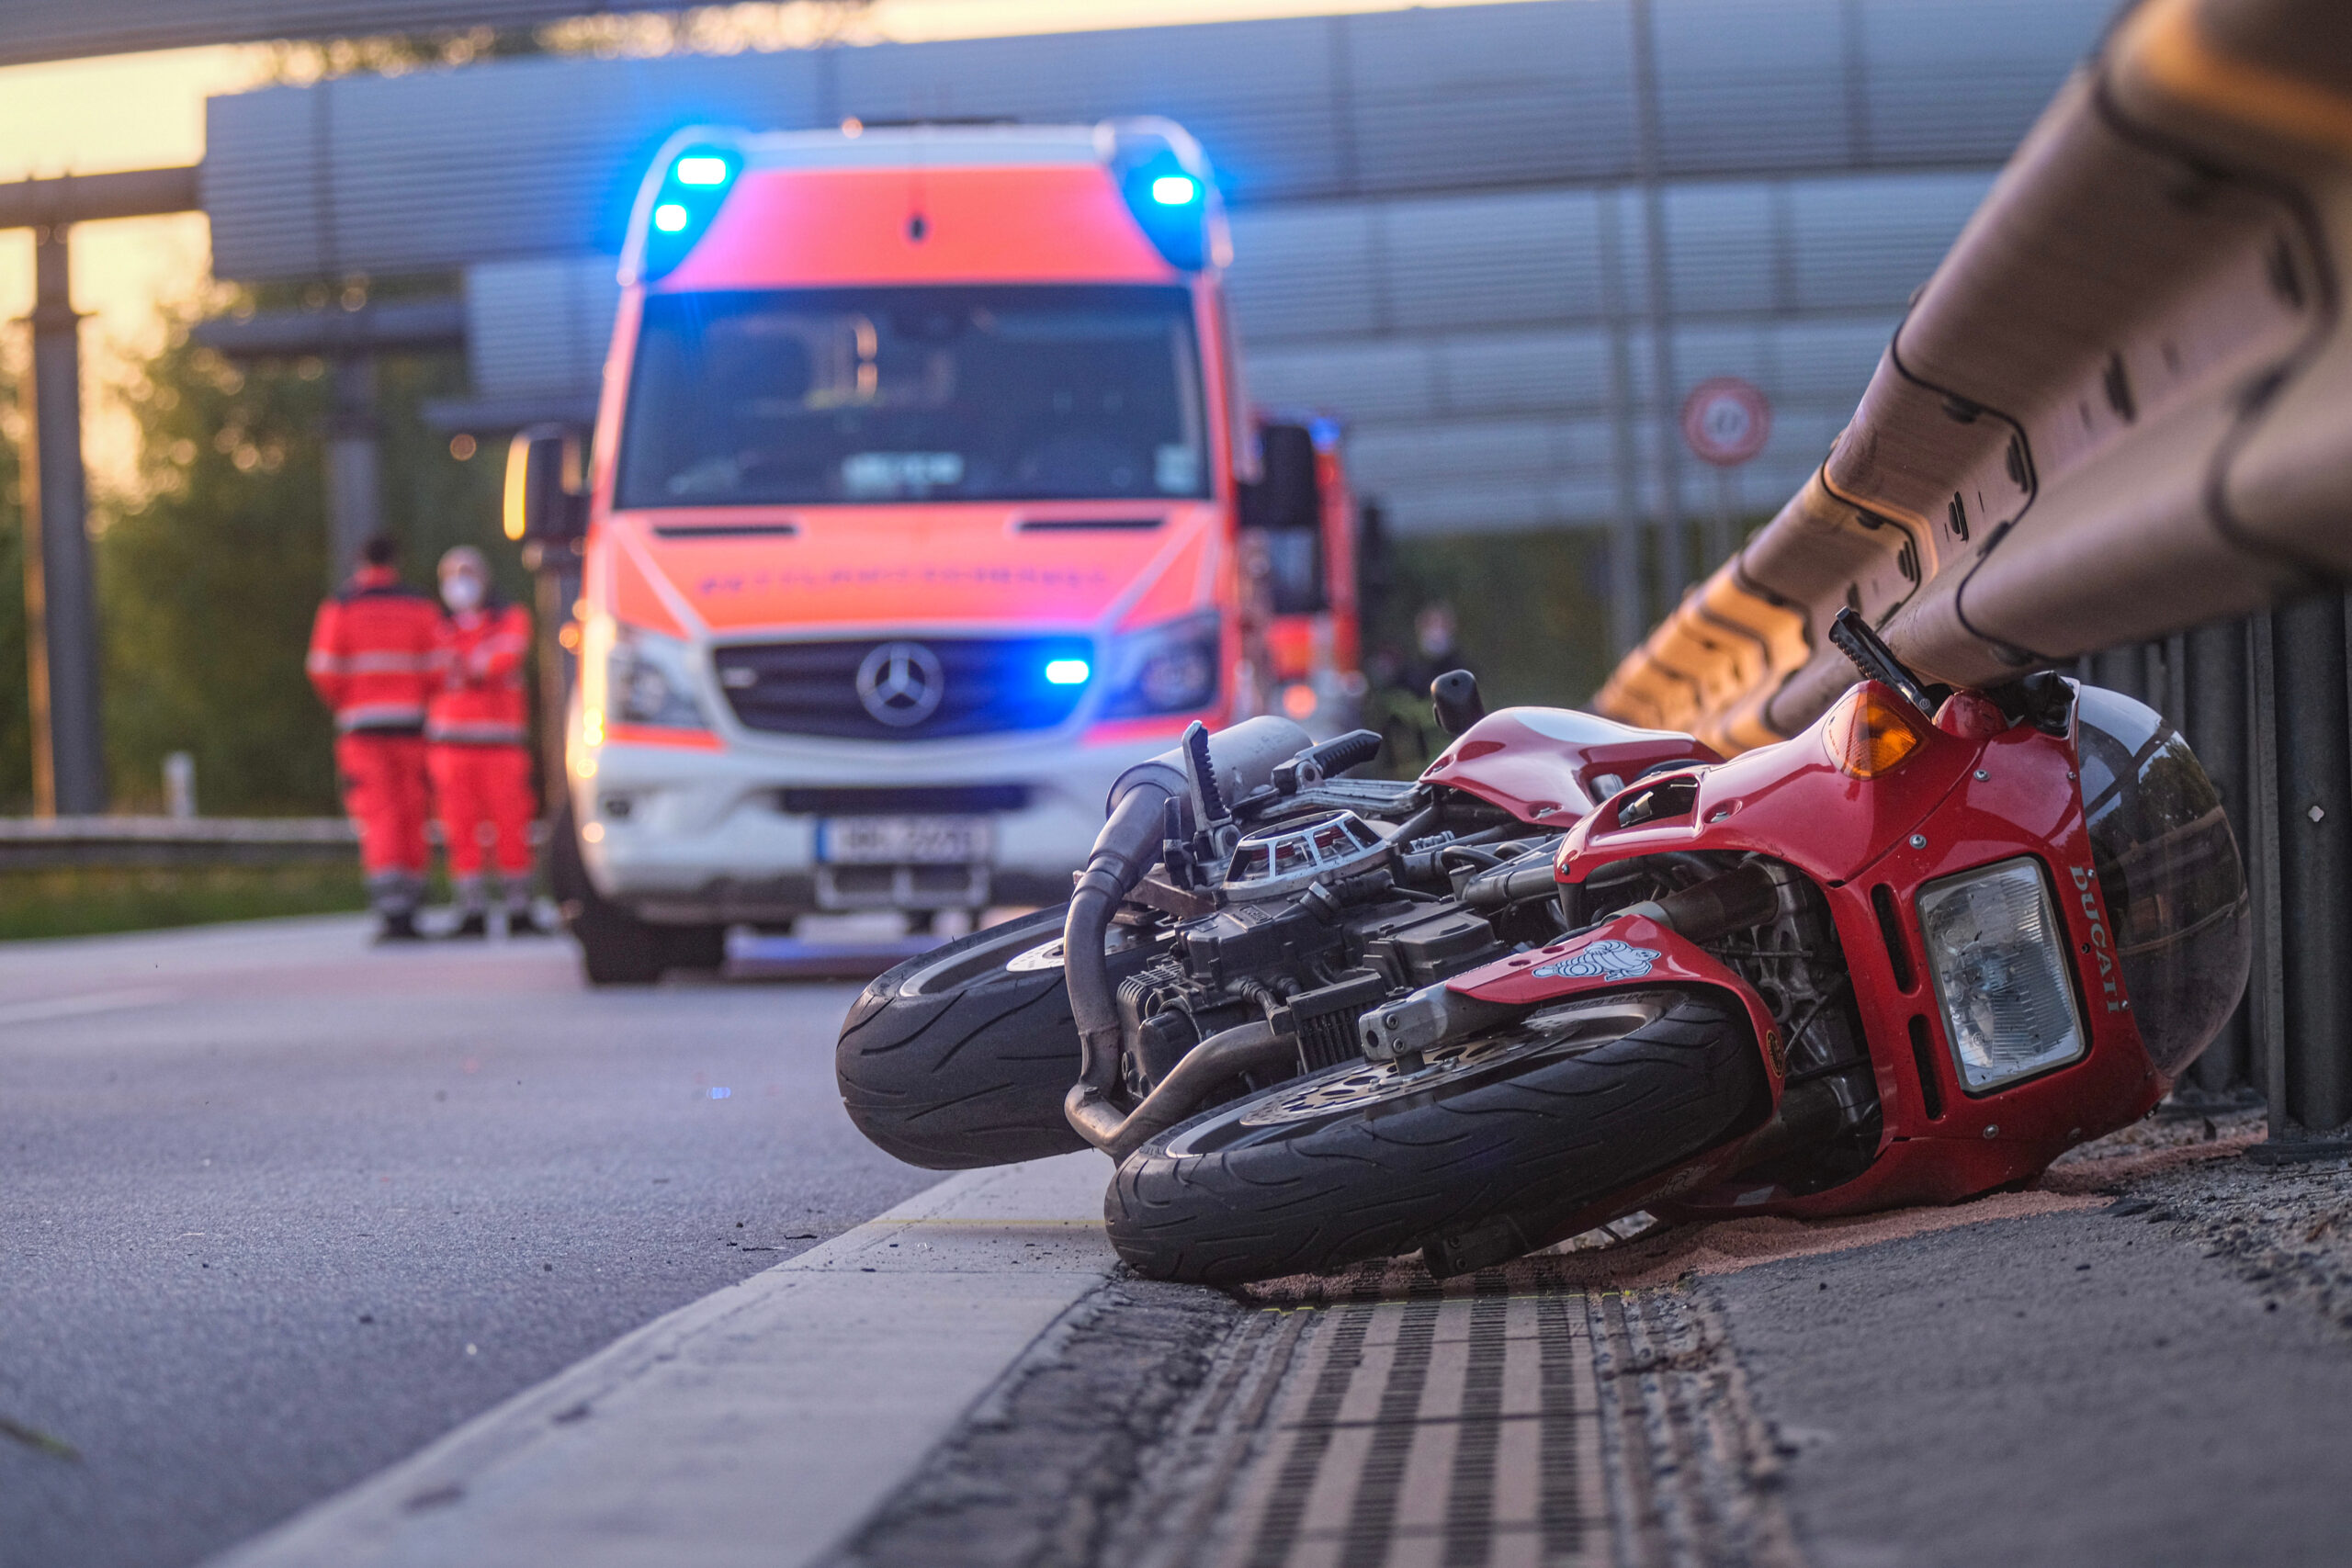 Tödlicher Unfall am Hamburger Flughafen – Motorradfahrer rast in Mittelleitplanke